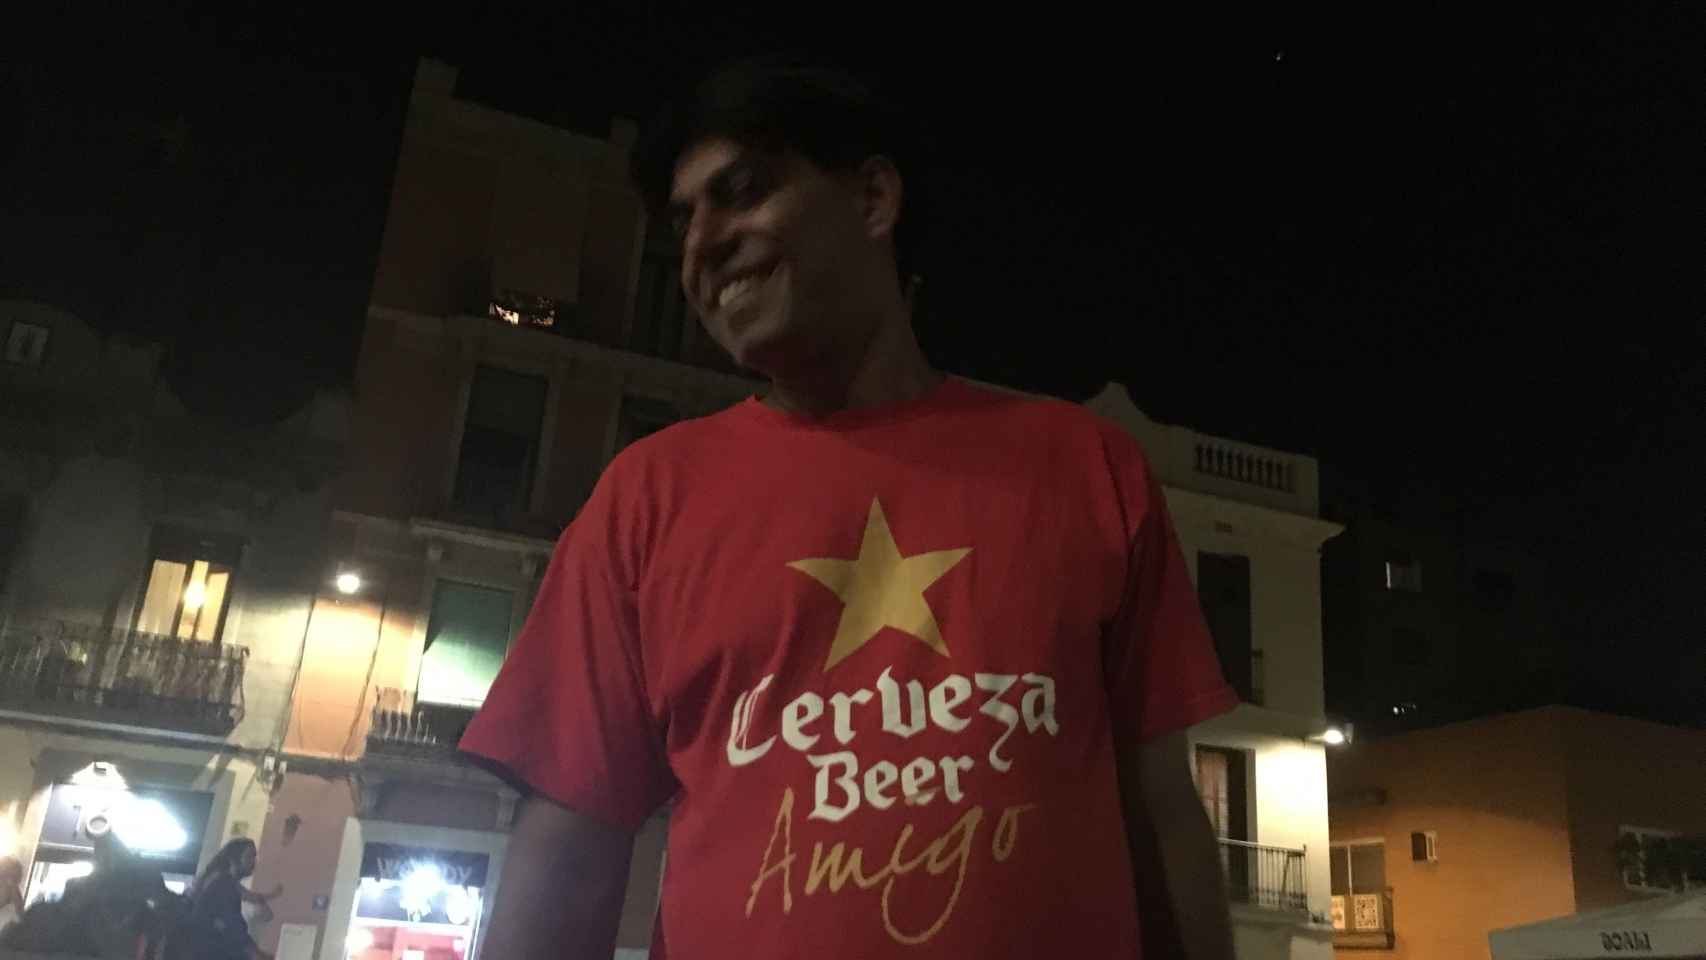 Uno de los lateros con la camiseta Cerveza beer amigo | PAULA BALDRICH